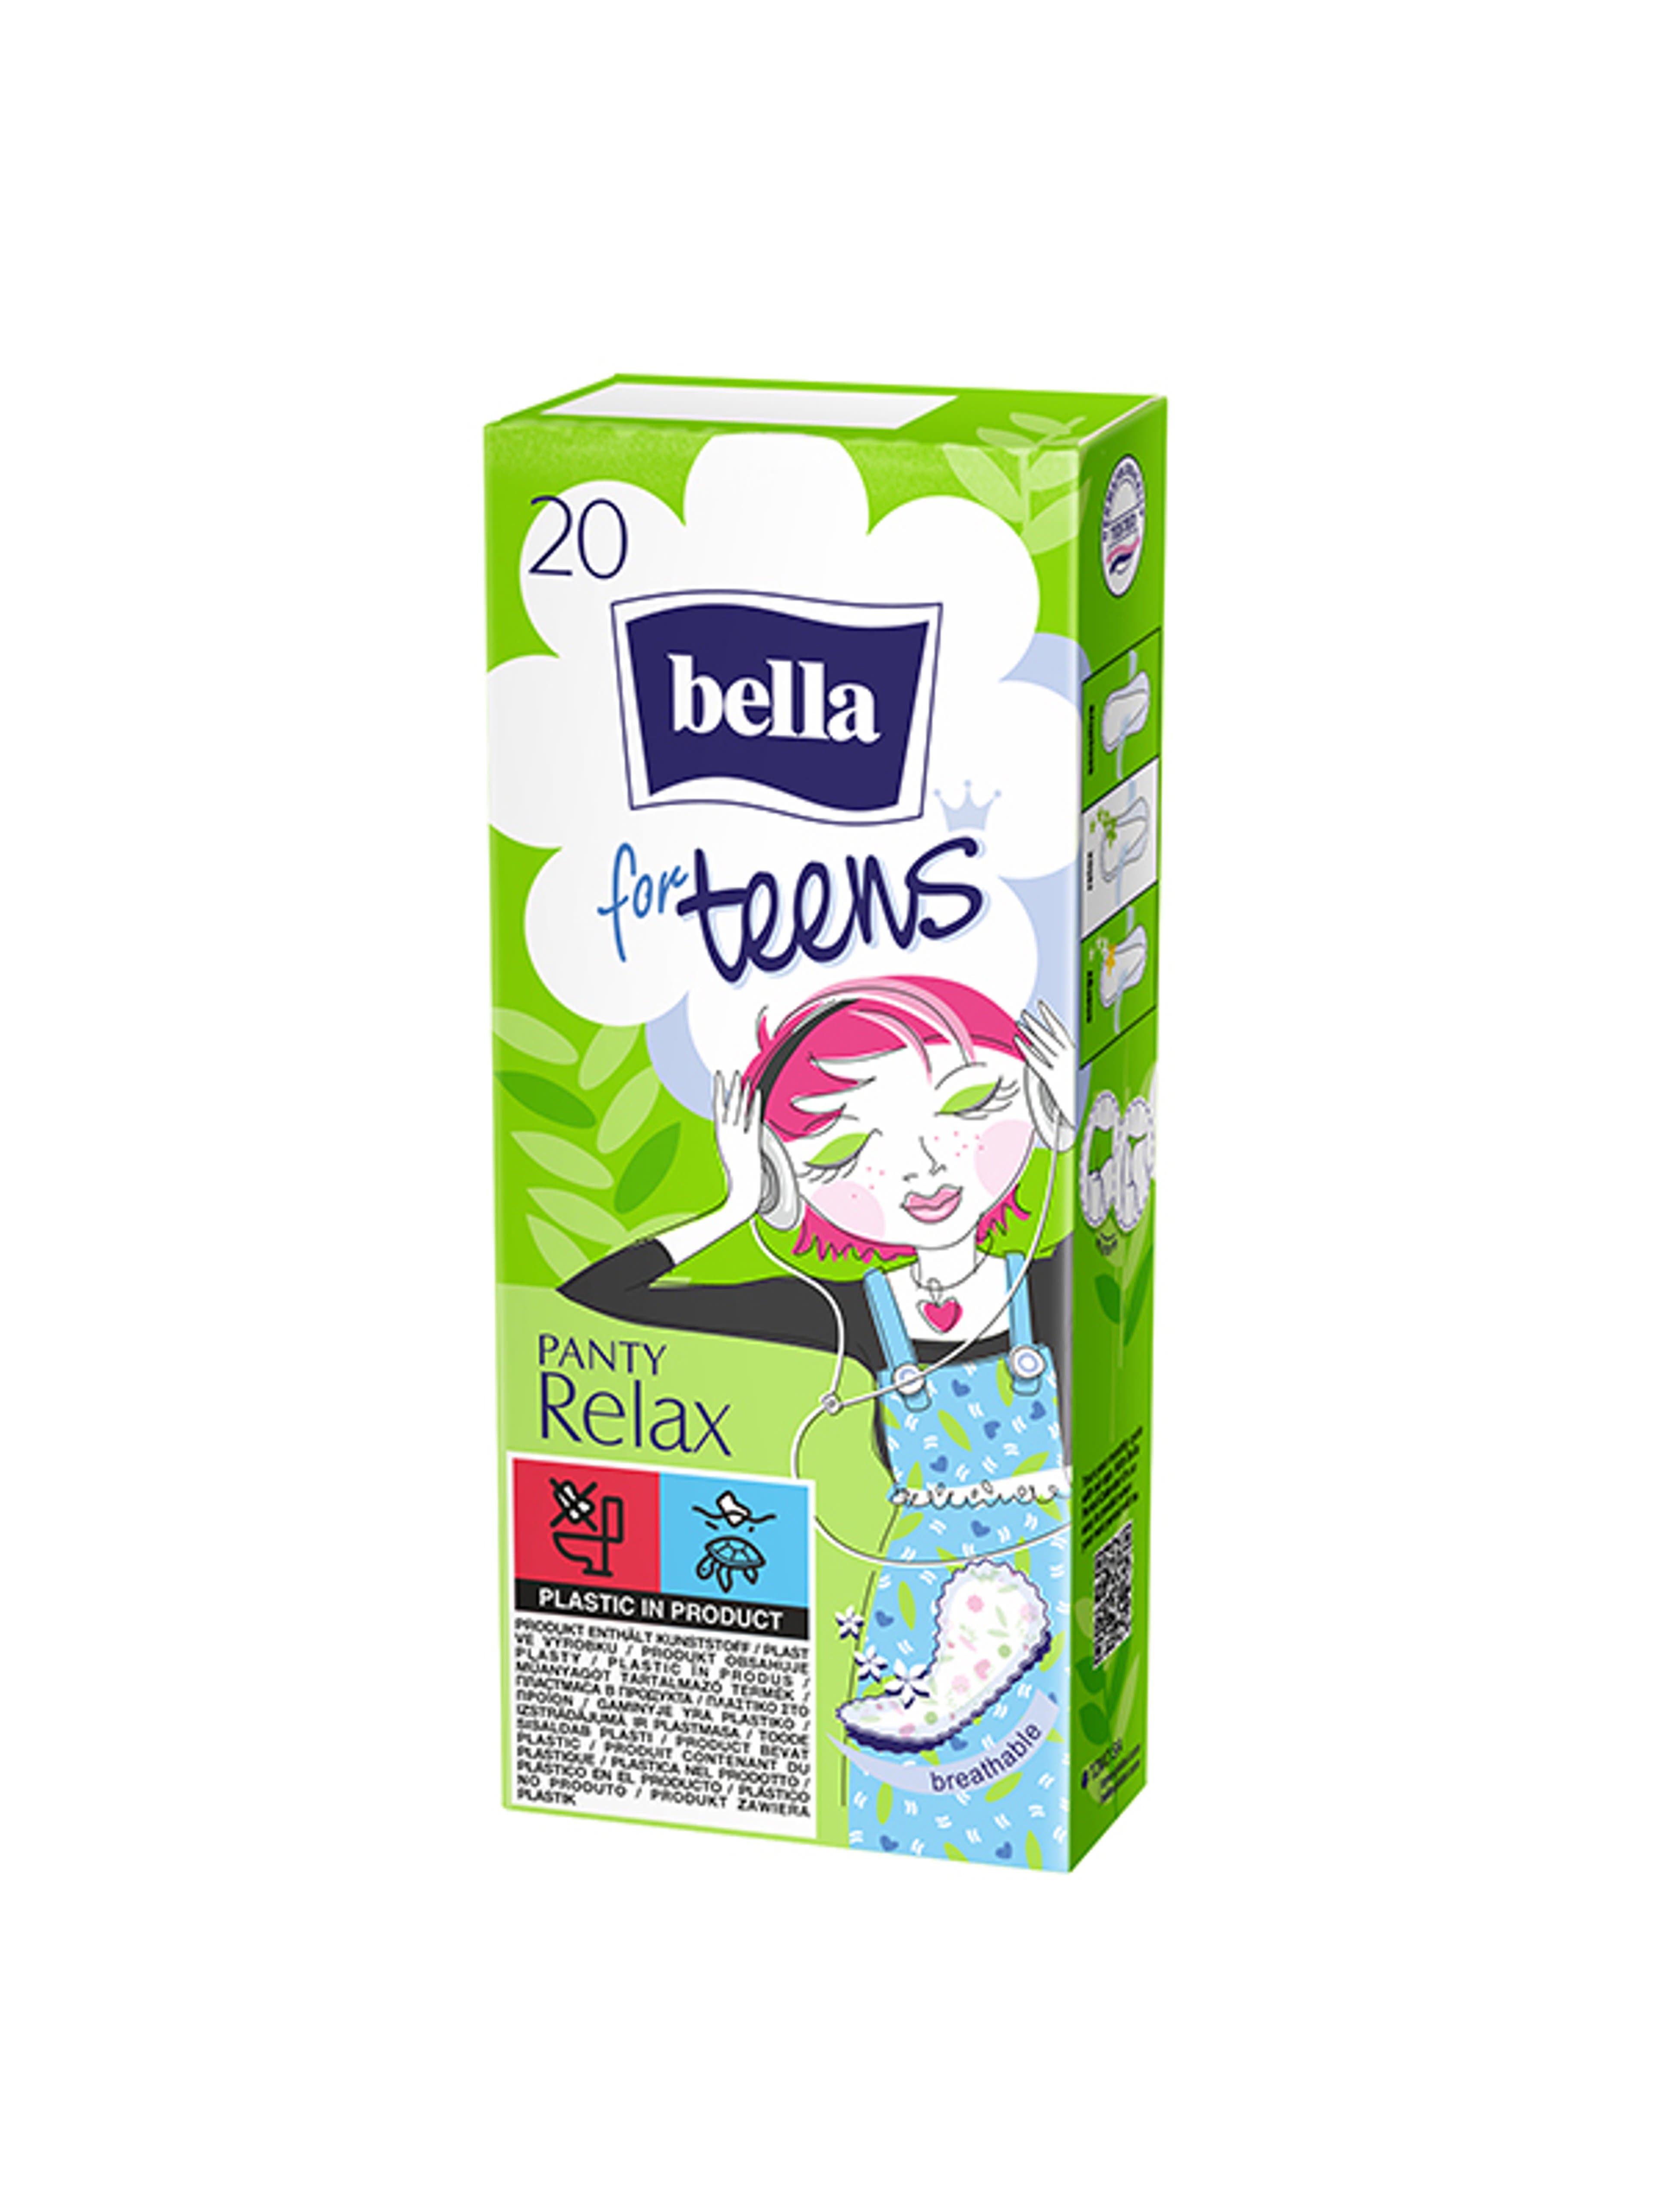 Bella for Teens Relax illatosított tisztasági betét - 20 db